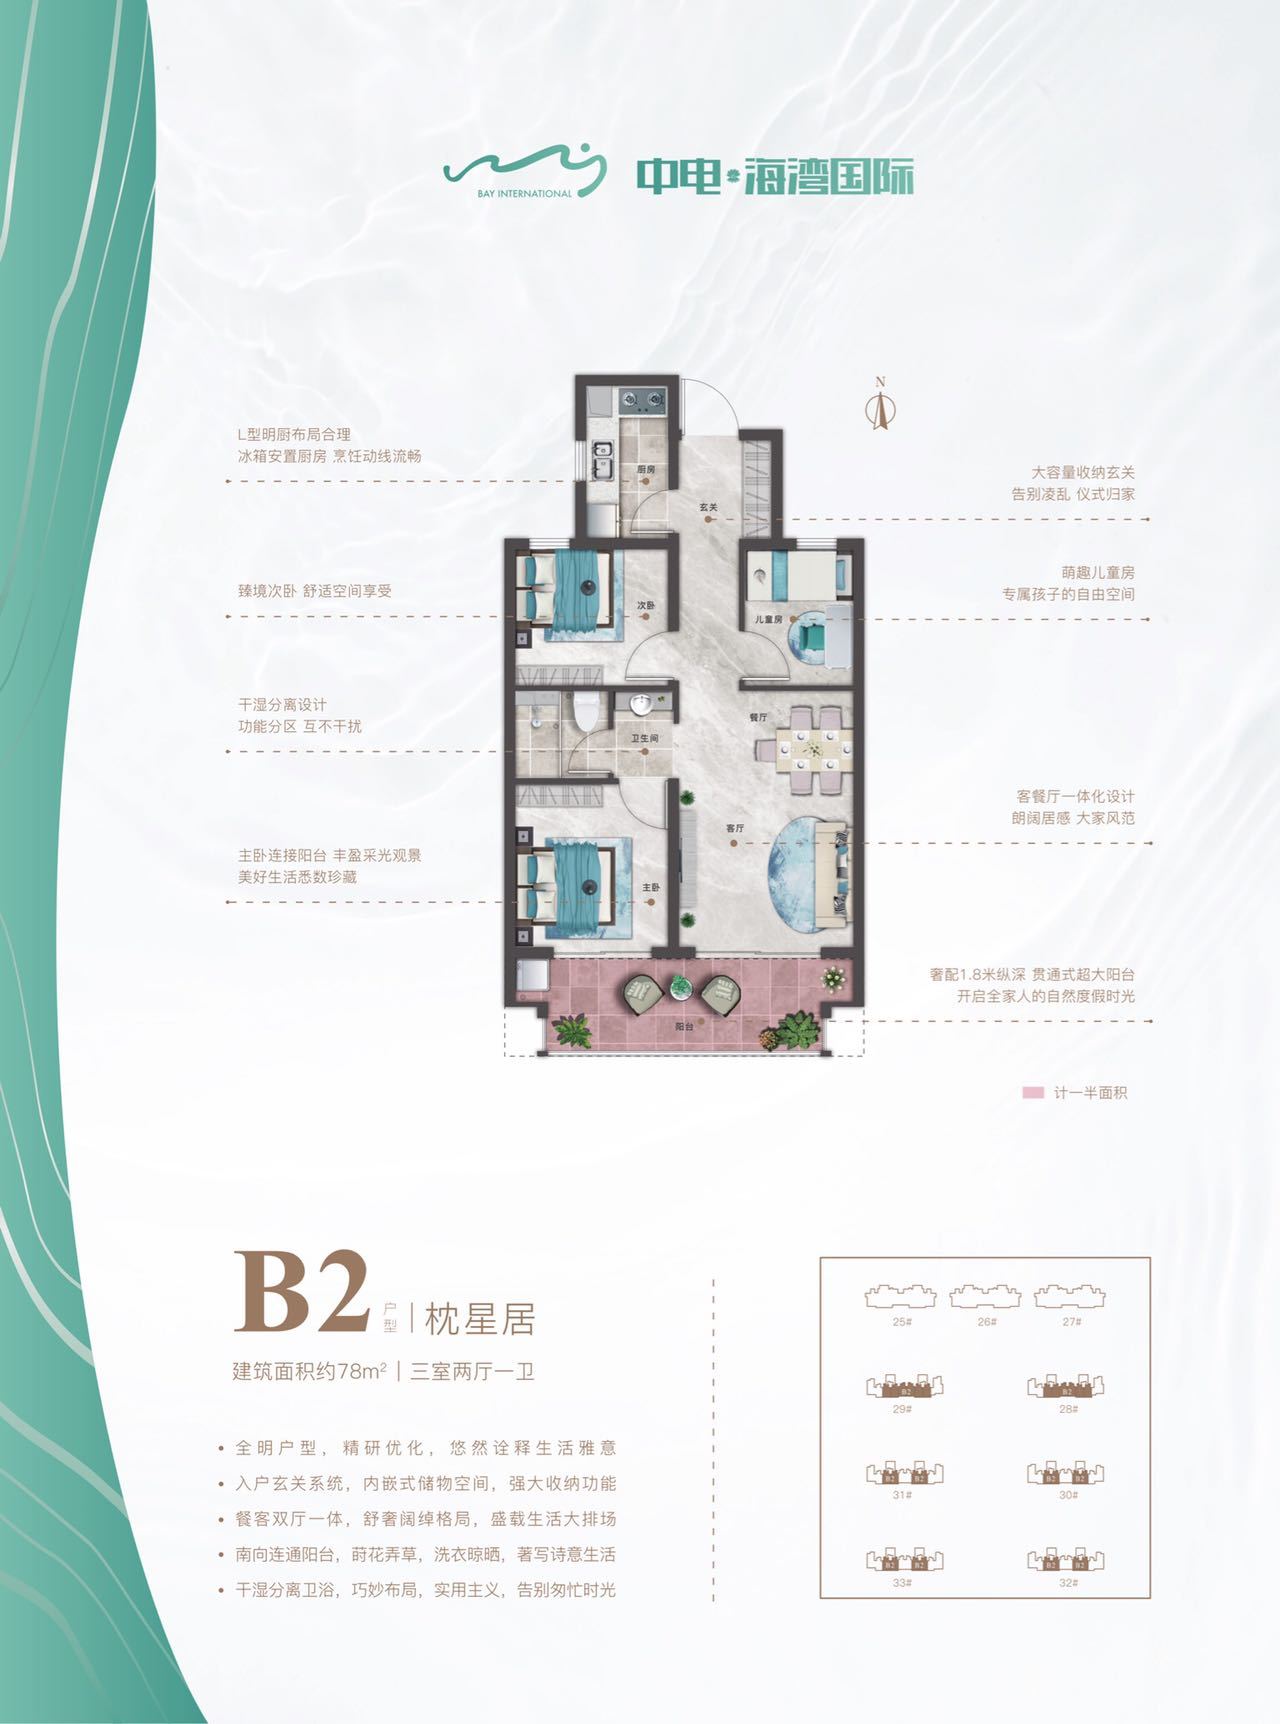 中电海湾国际 高层 四期 B2户型 枕星居 建面78㎡ 三室两厅一卫